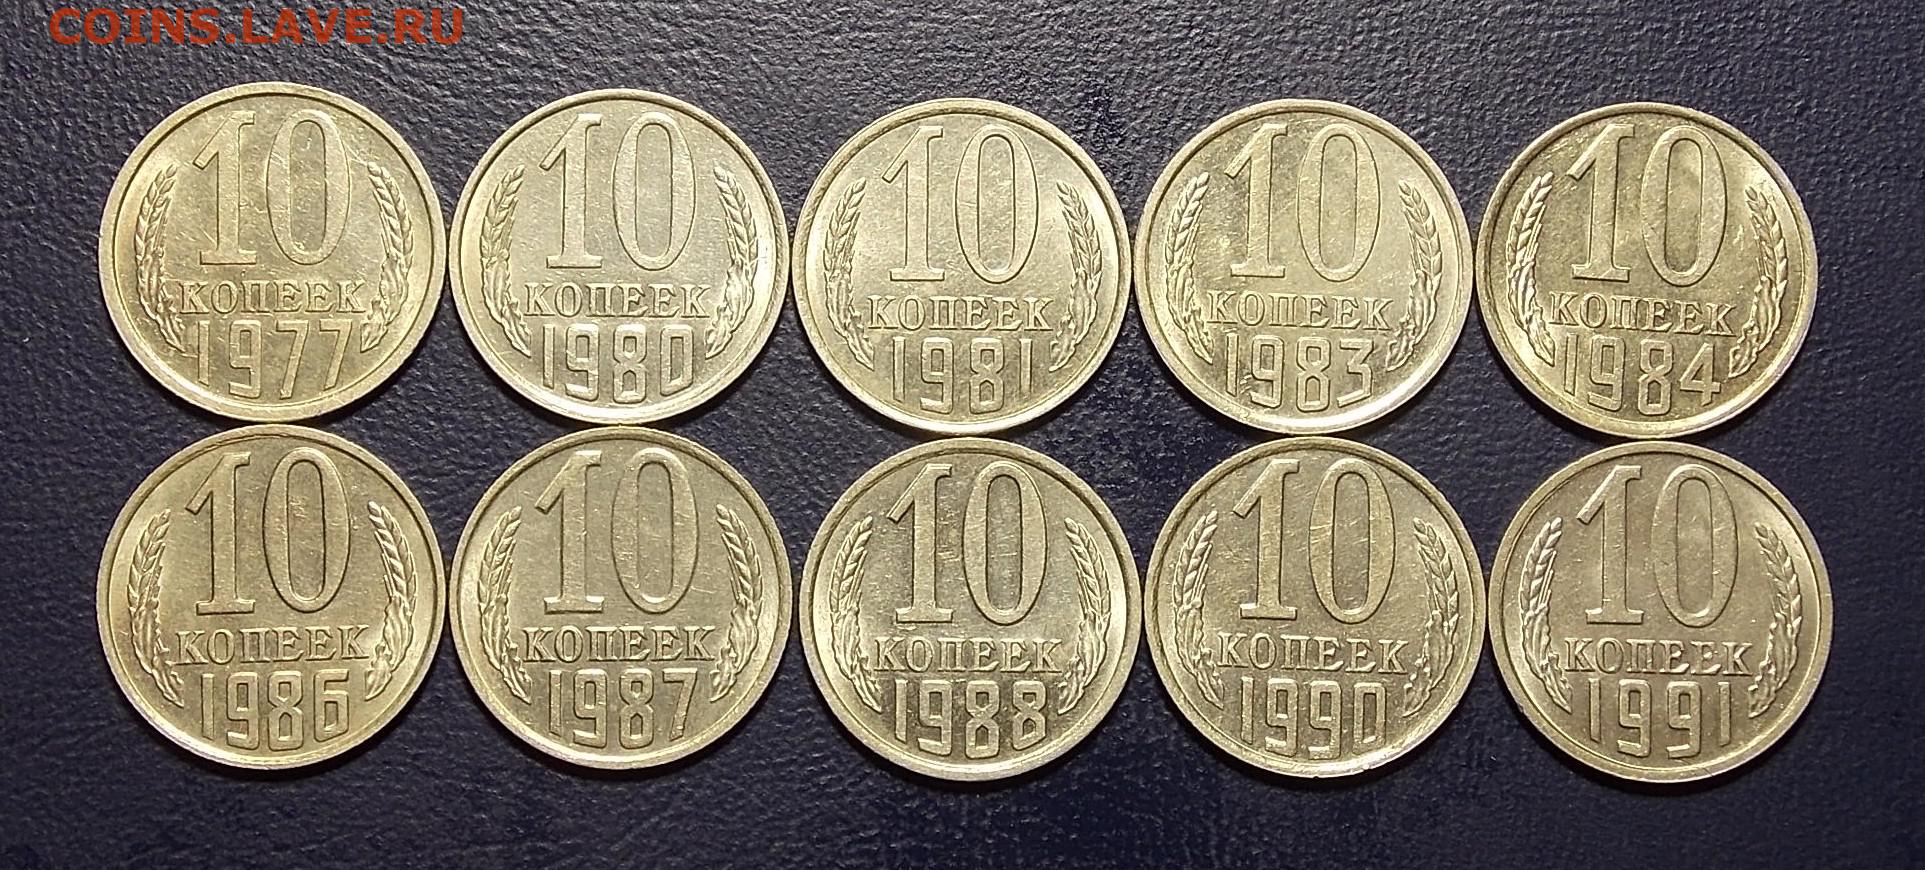 35 6 в рублях. Монеты СССР С 1977 по 1991 год.. Coin serpuhov Wiki. Где можно купить монеты в Серпухове.